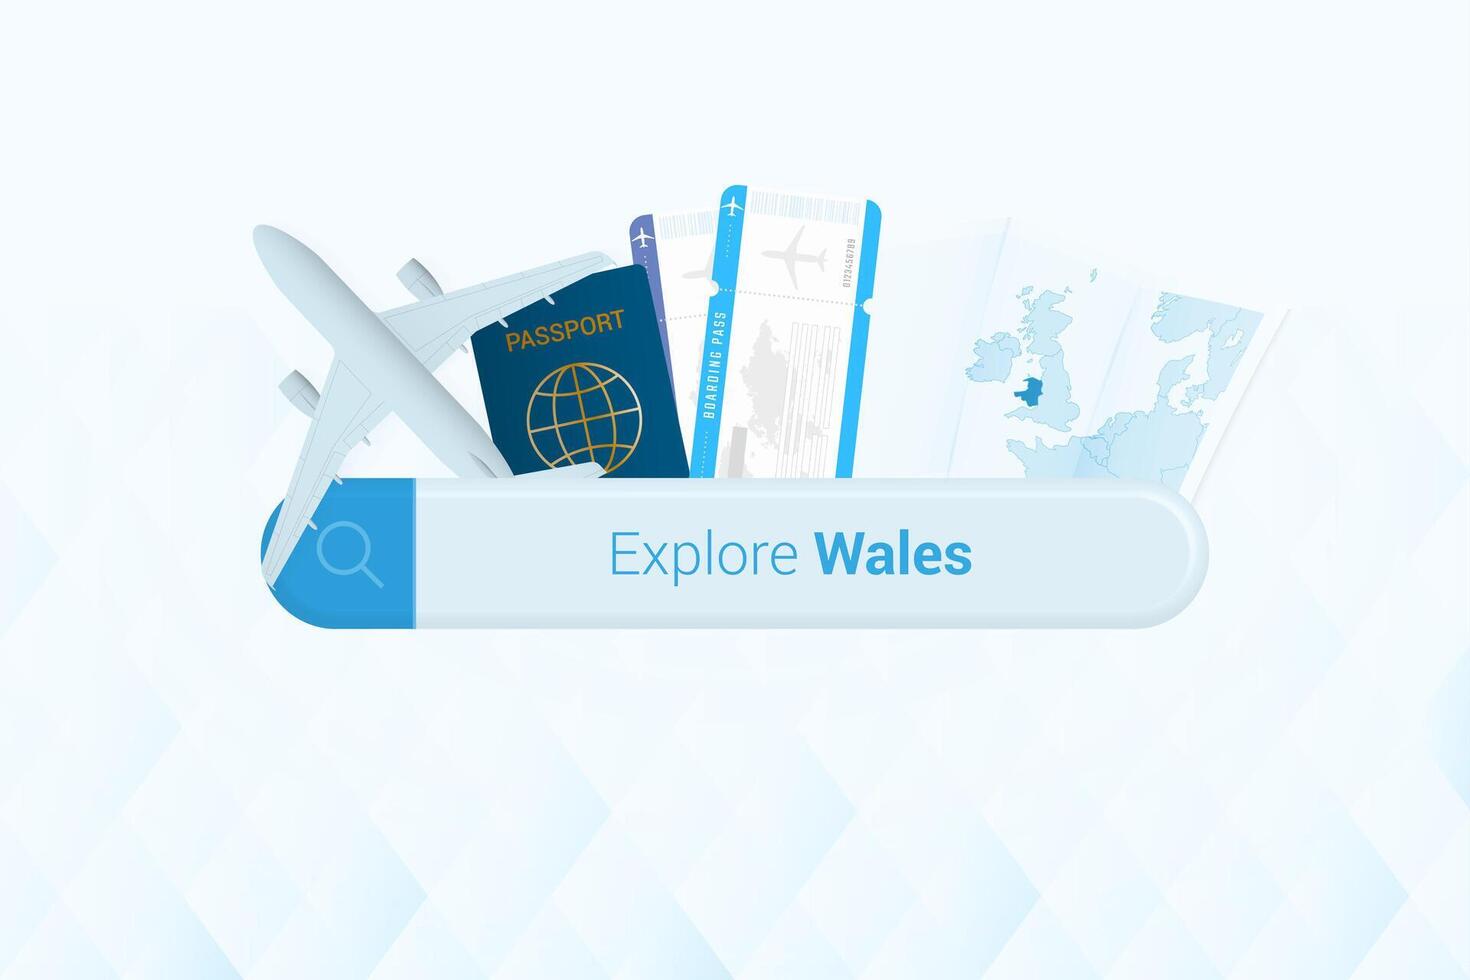 sökande biljetter till wales eller resa destination i Wales. sökande bar med flygplan, pass, ombordstigning passera, biljetter och Karta. vektor